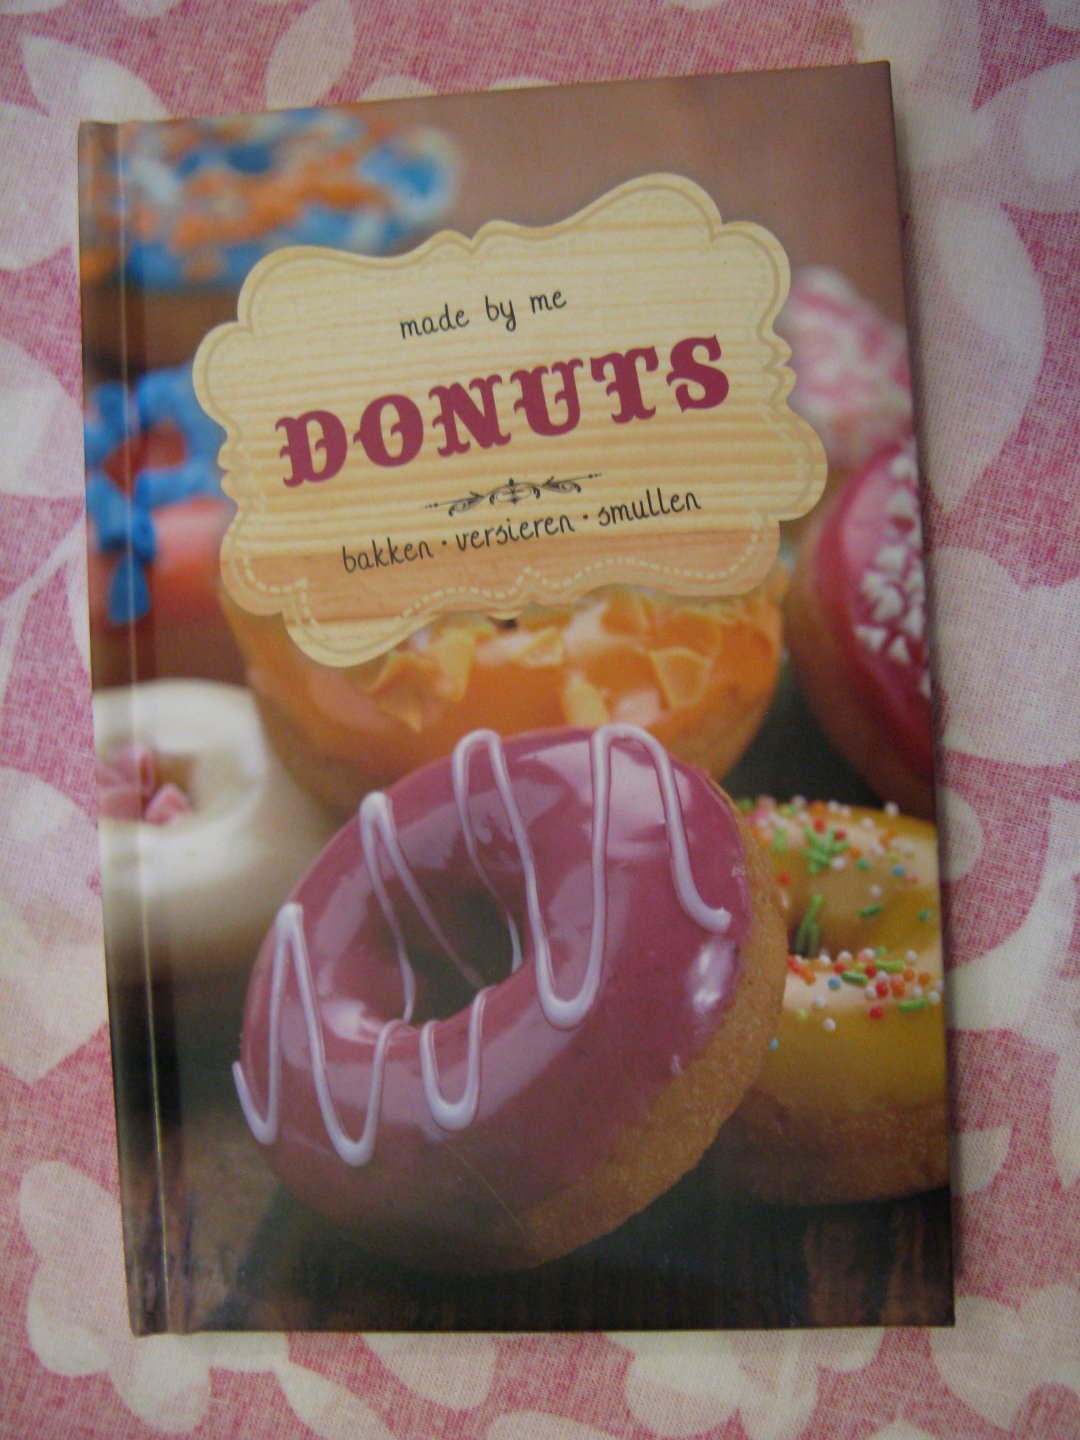 arkel, francis van - made by me donuts